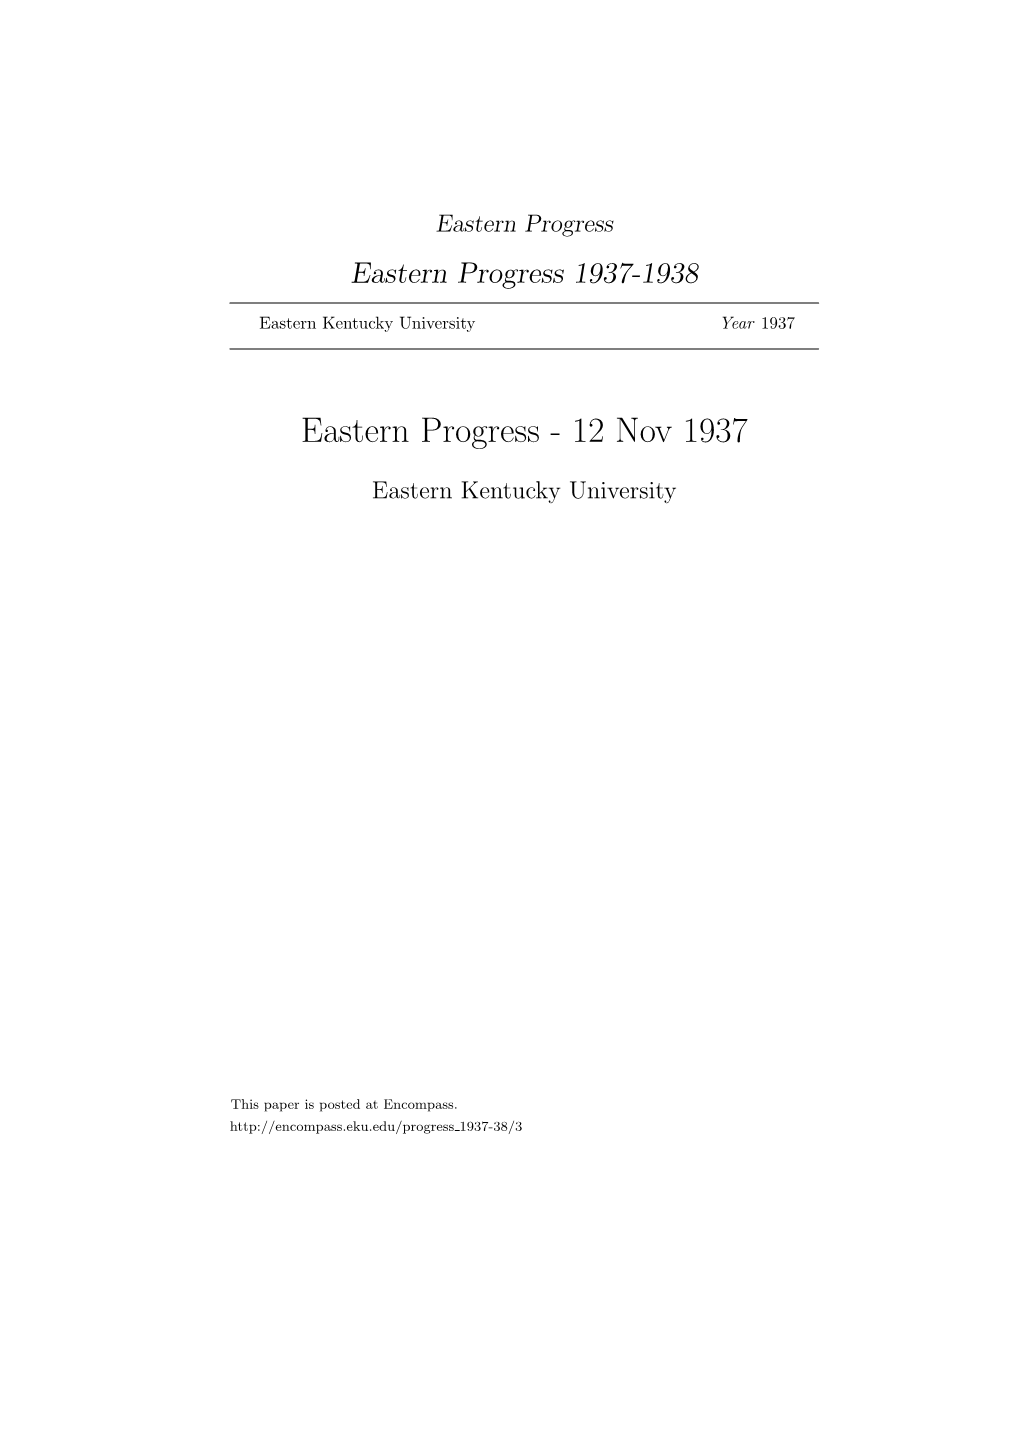 Eastern Progress Eastern Progress 1937-1938